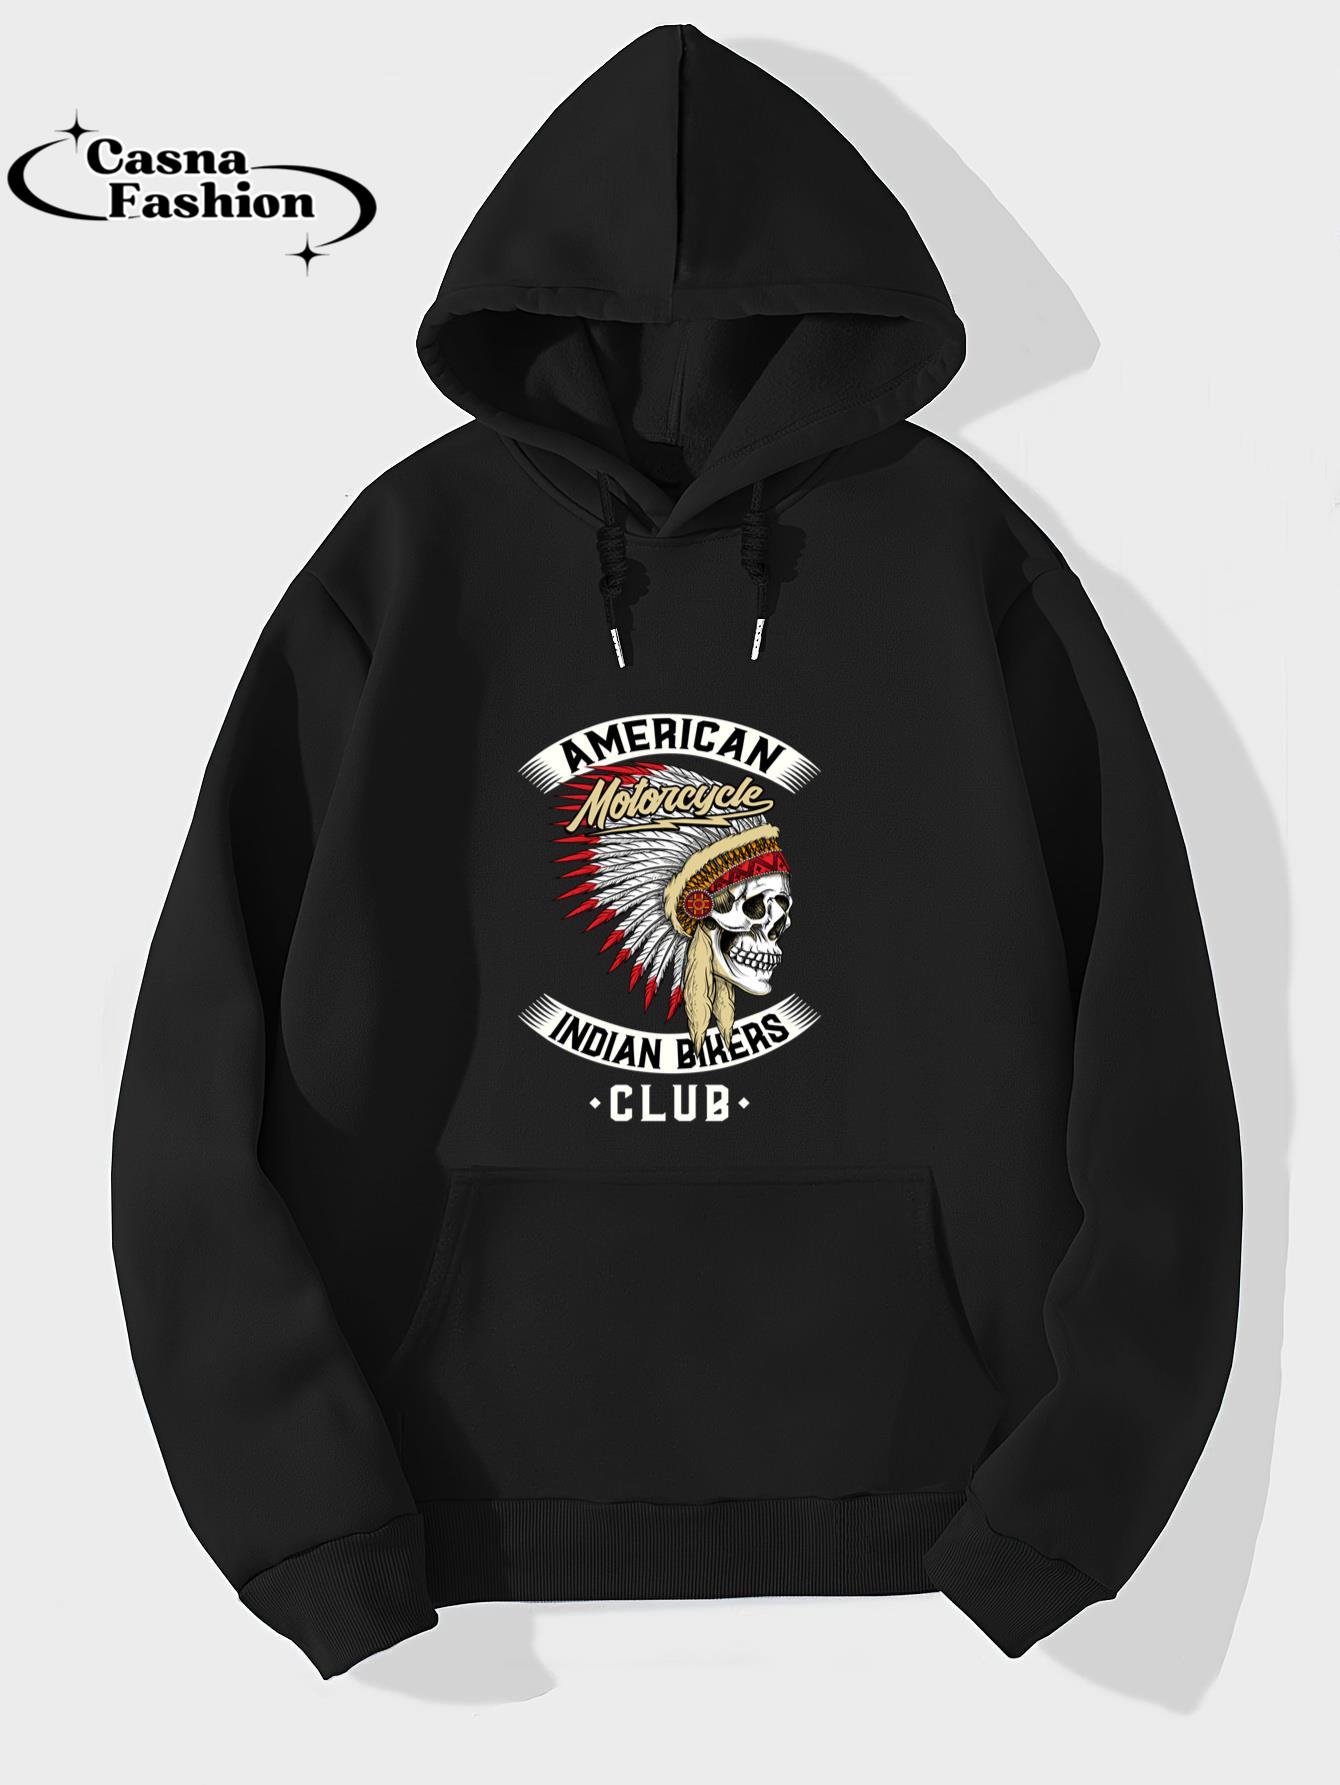 casnafashion_Hoodie_American Motorcycle Indian Bikers Club - Chopper Biker Long Sleeve T-Shirt_hoodie_black hoodie